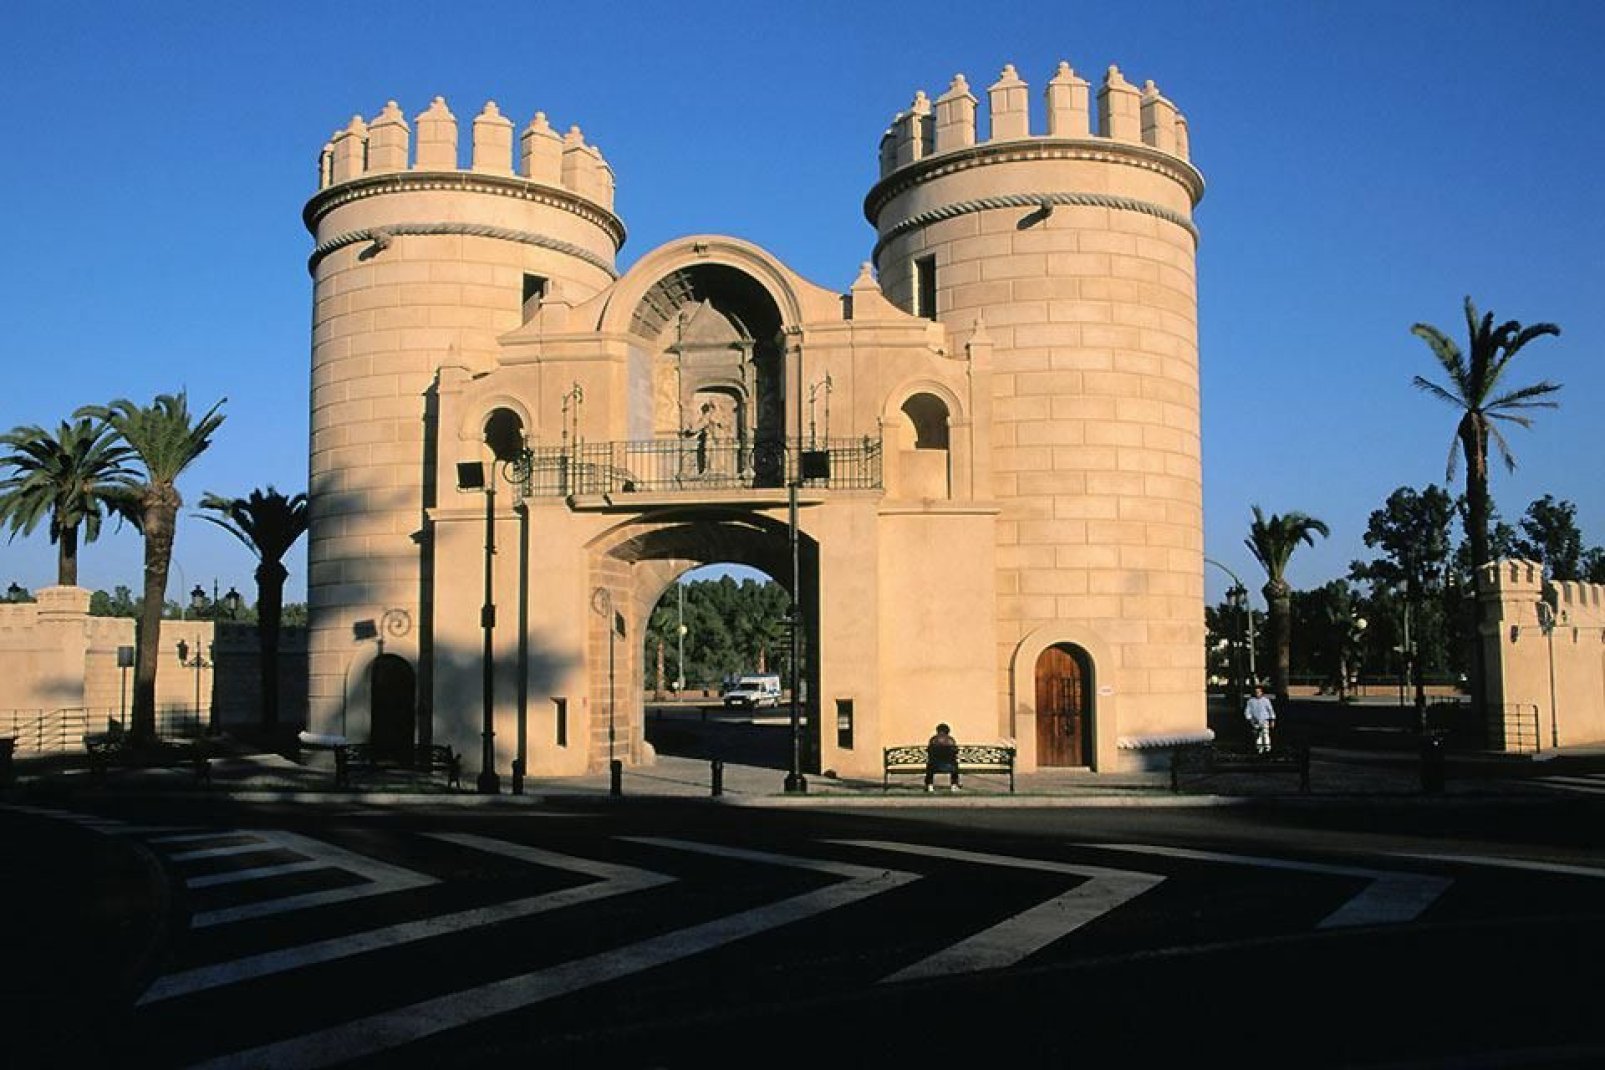 L'Alcazar, monument datant du XVème siècle, domine la ville de Zafra, surnommée "la Petite Séville".